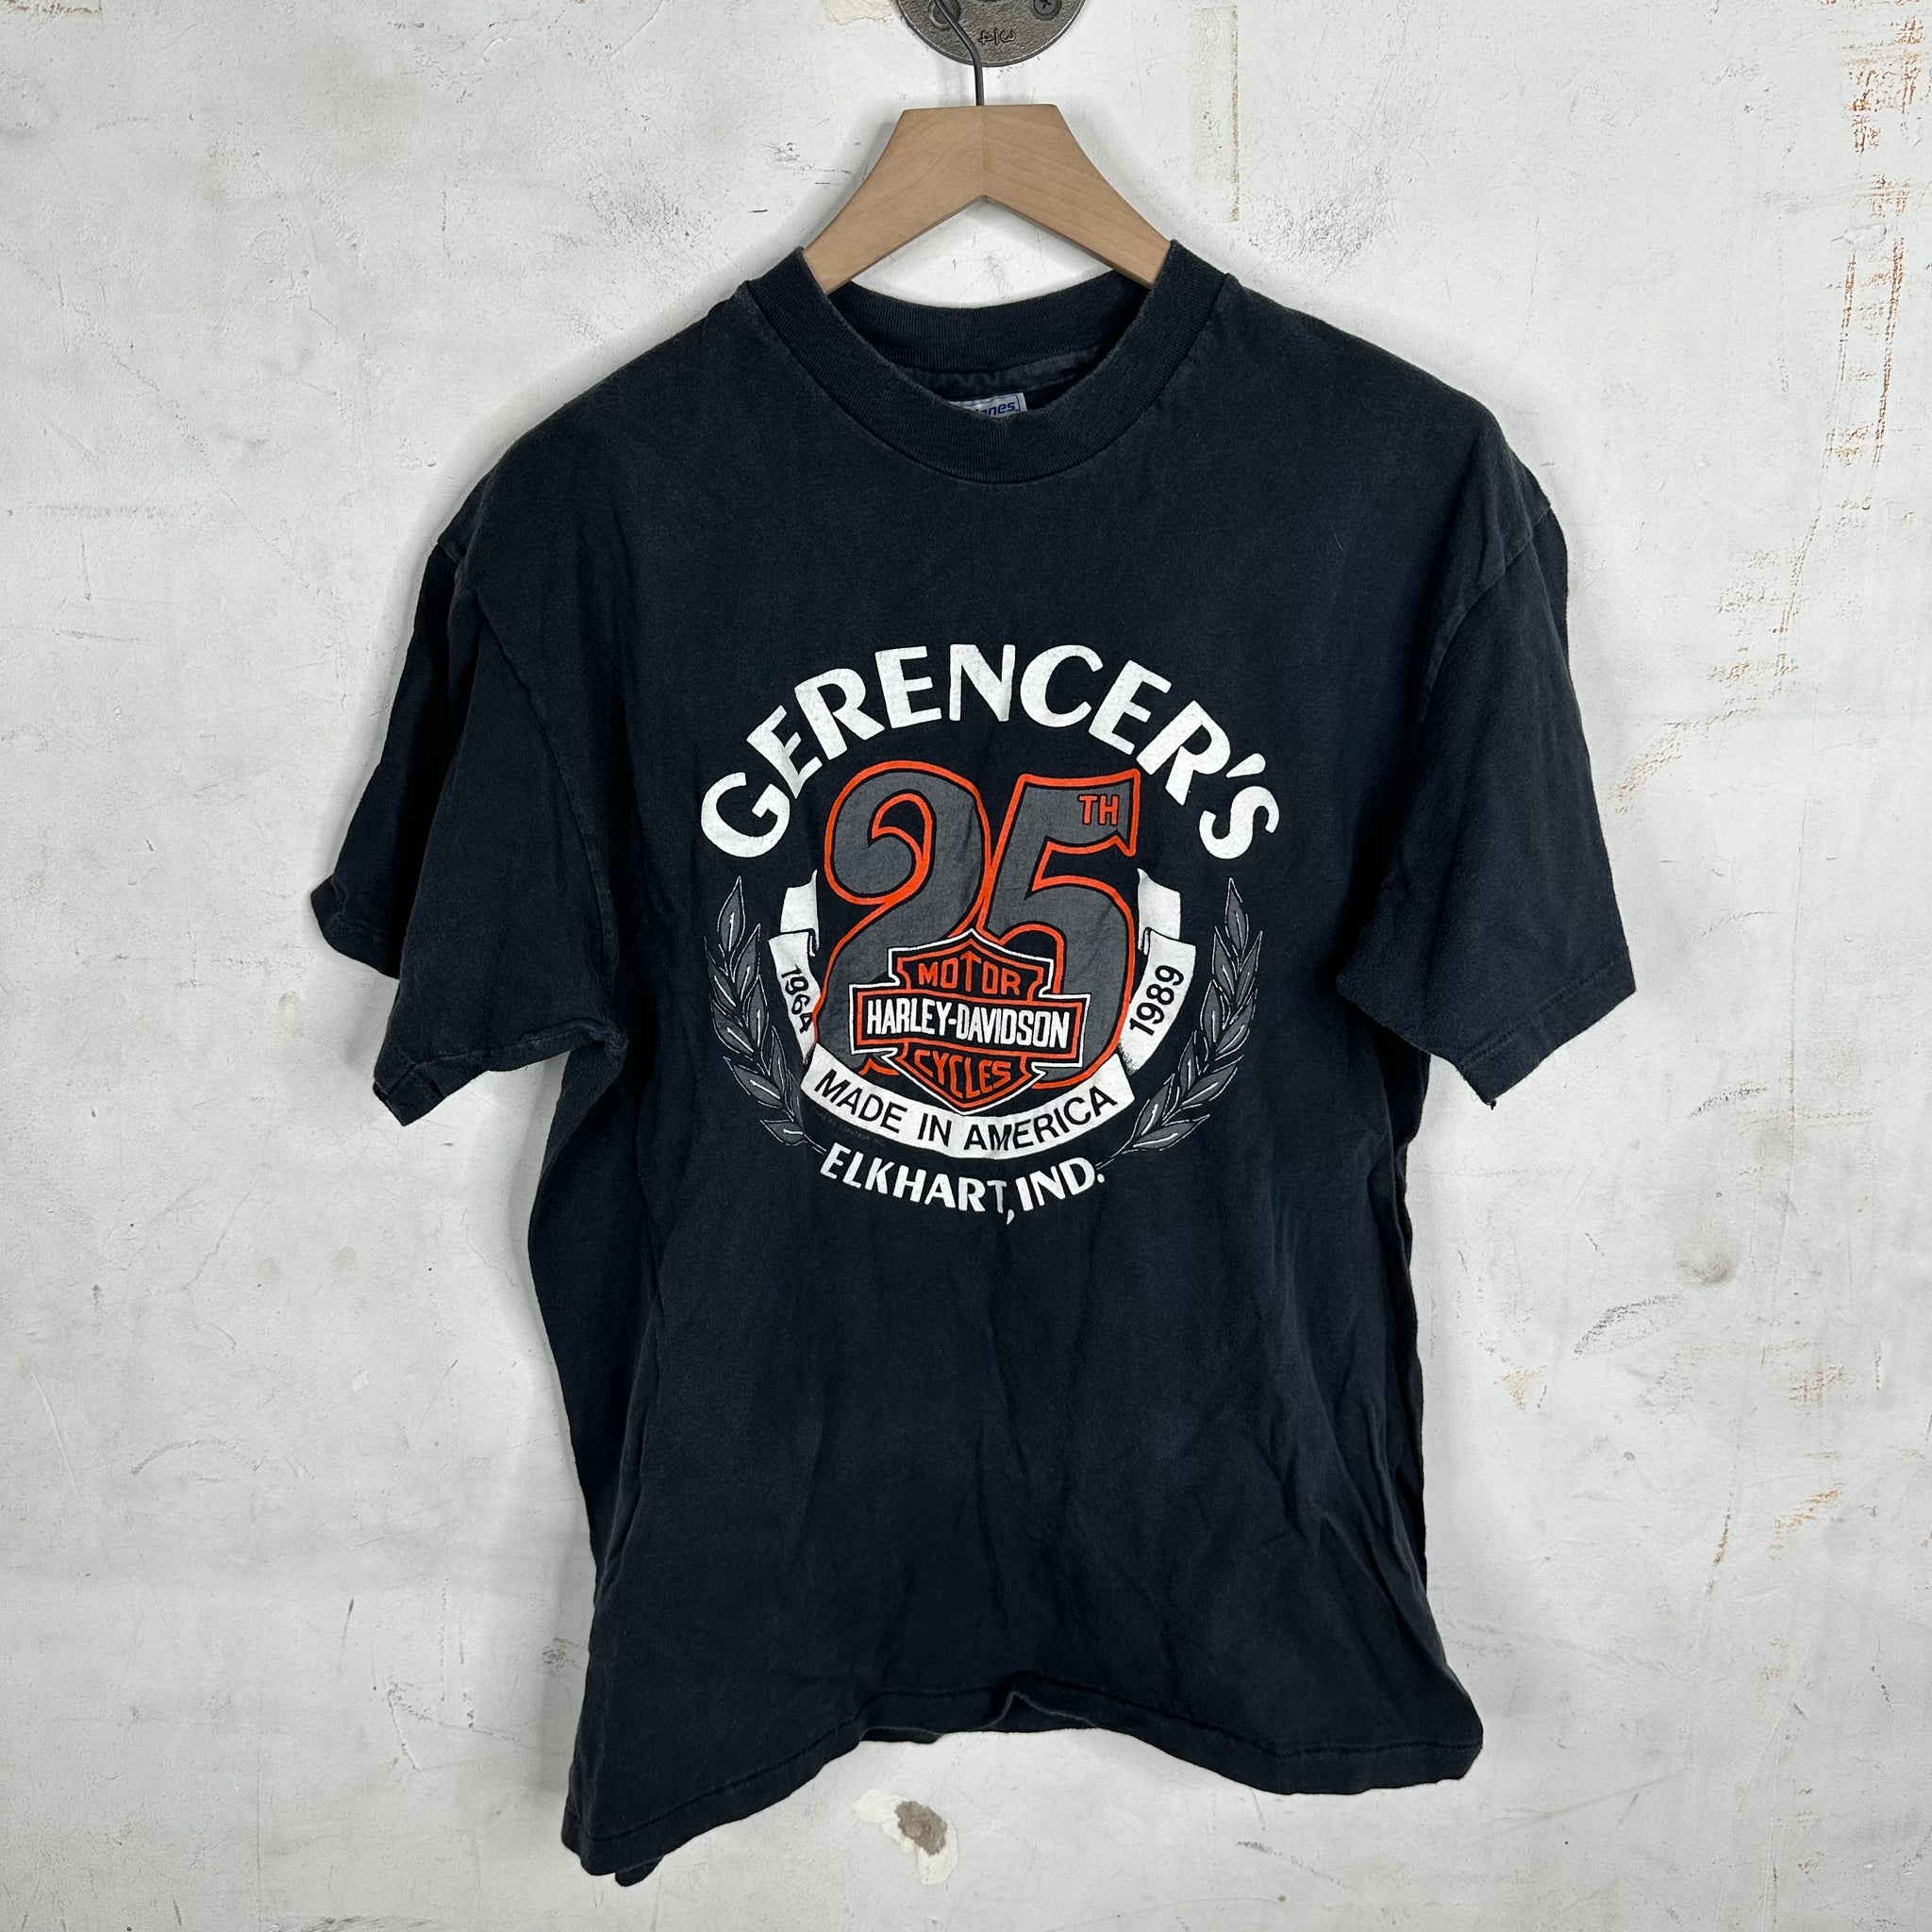 Vintage Gerencer’s Harley Davidson T-shirt